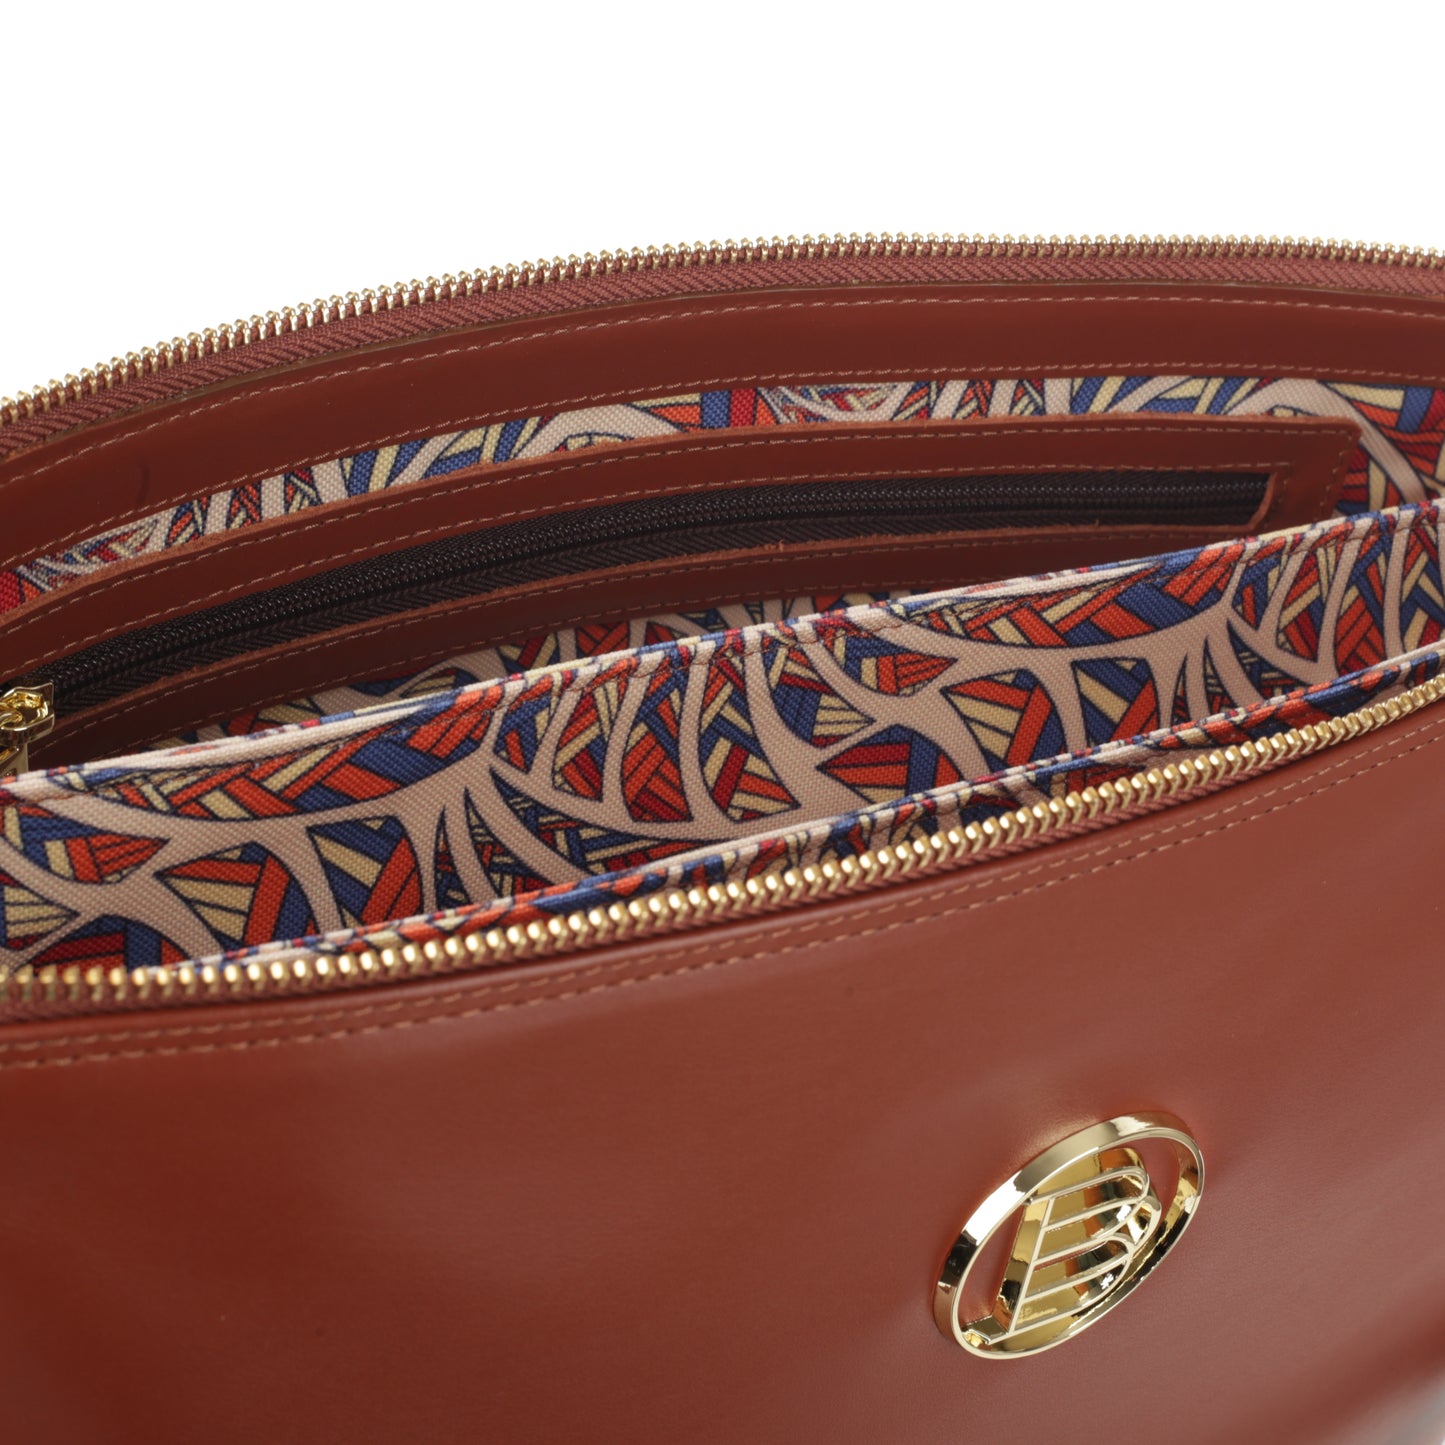 MILLO II NAPA BRANDY women's leather handbag